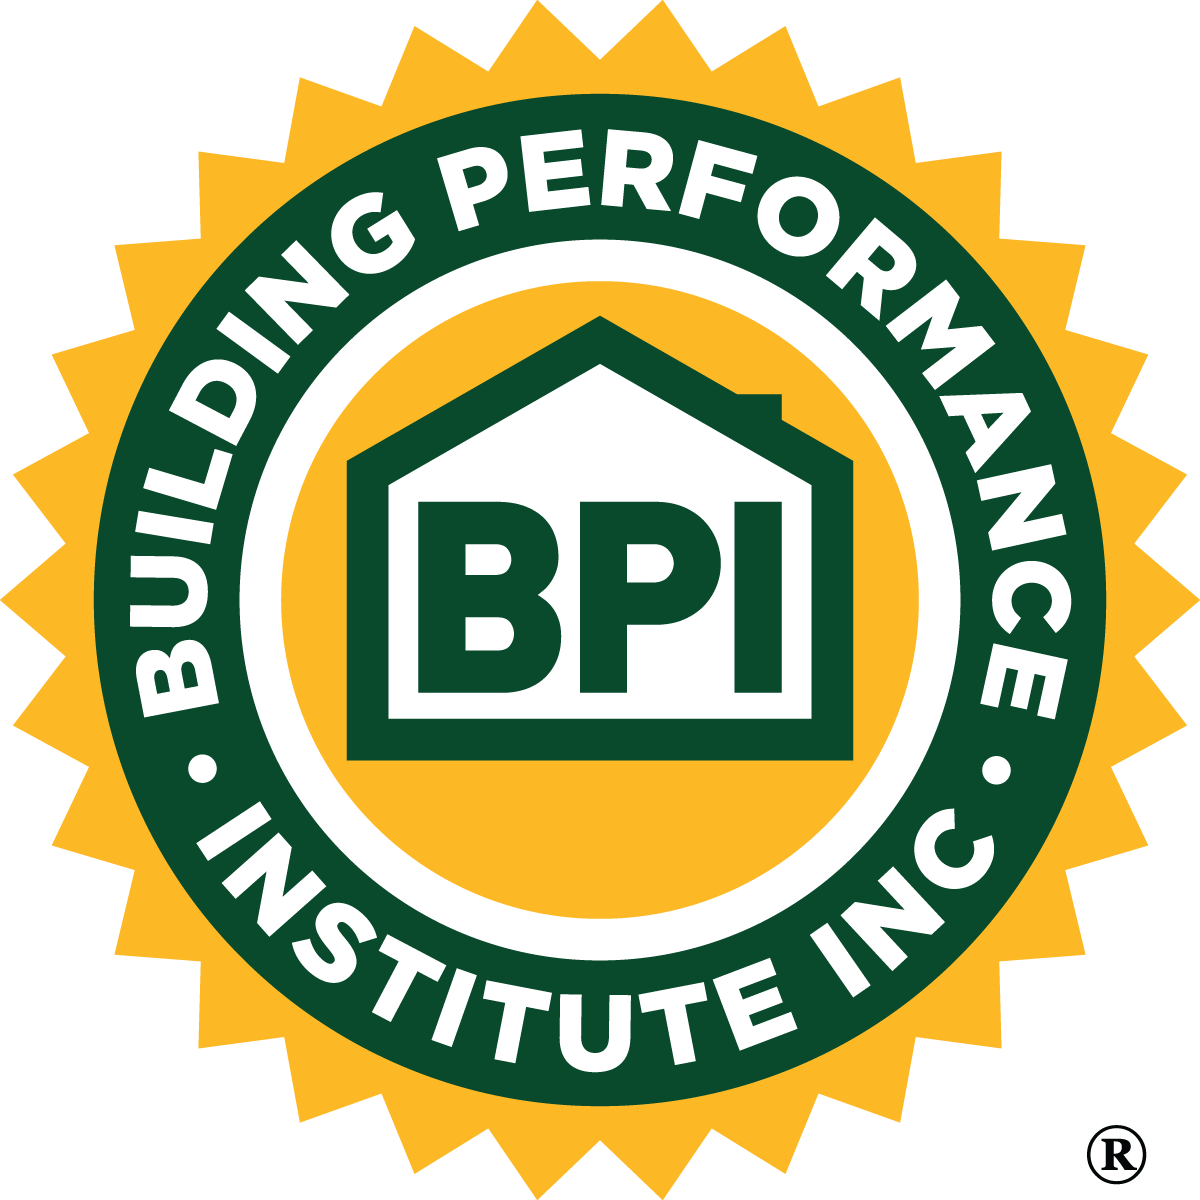 BPI - Building Performance Institute